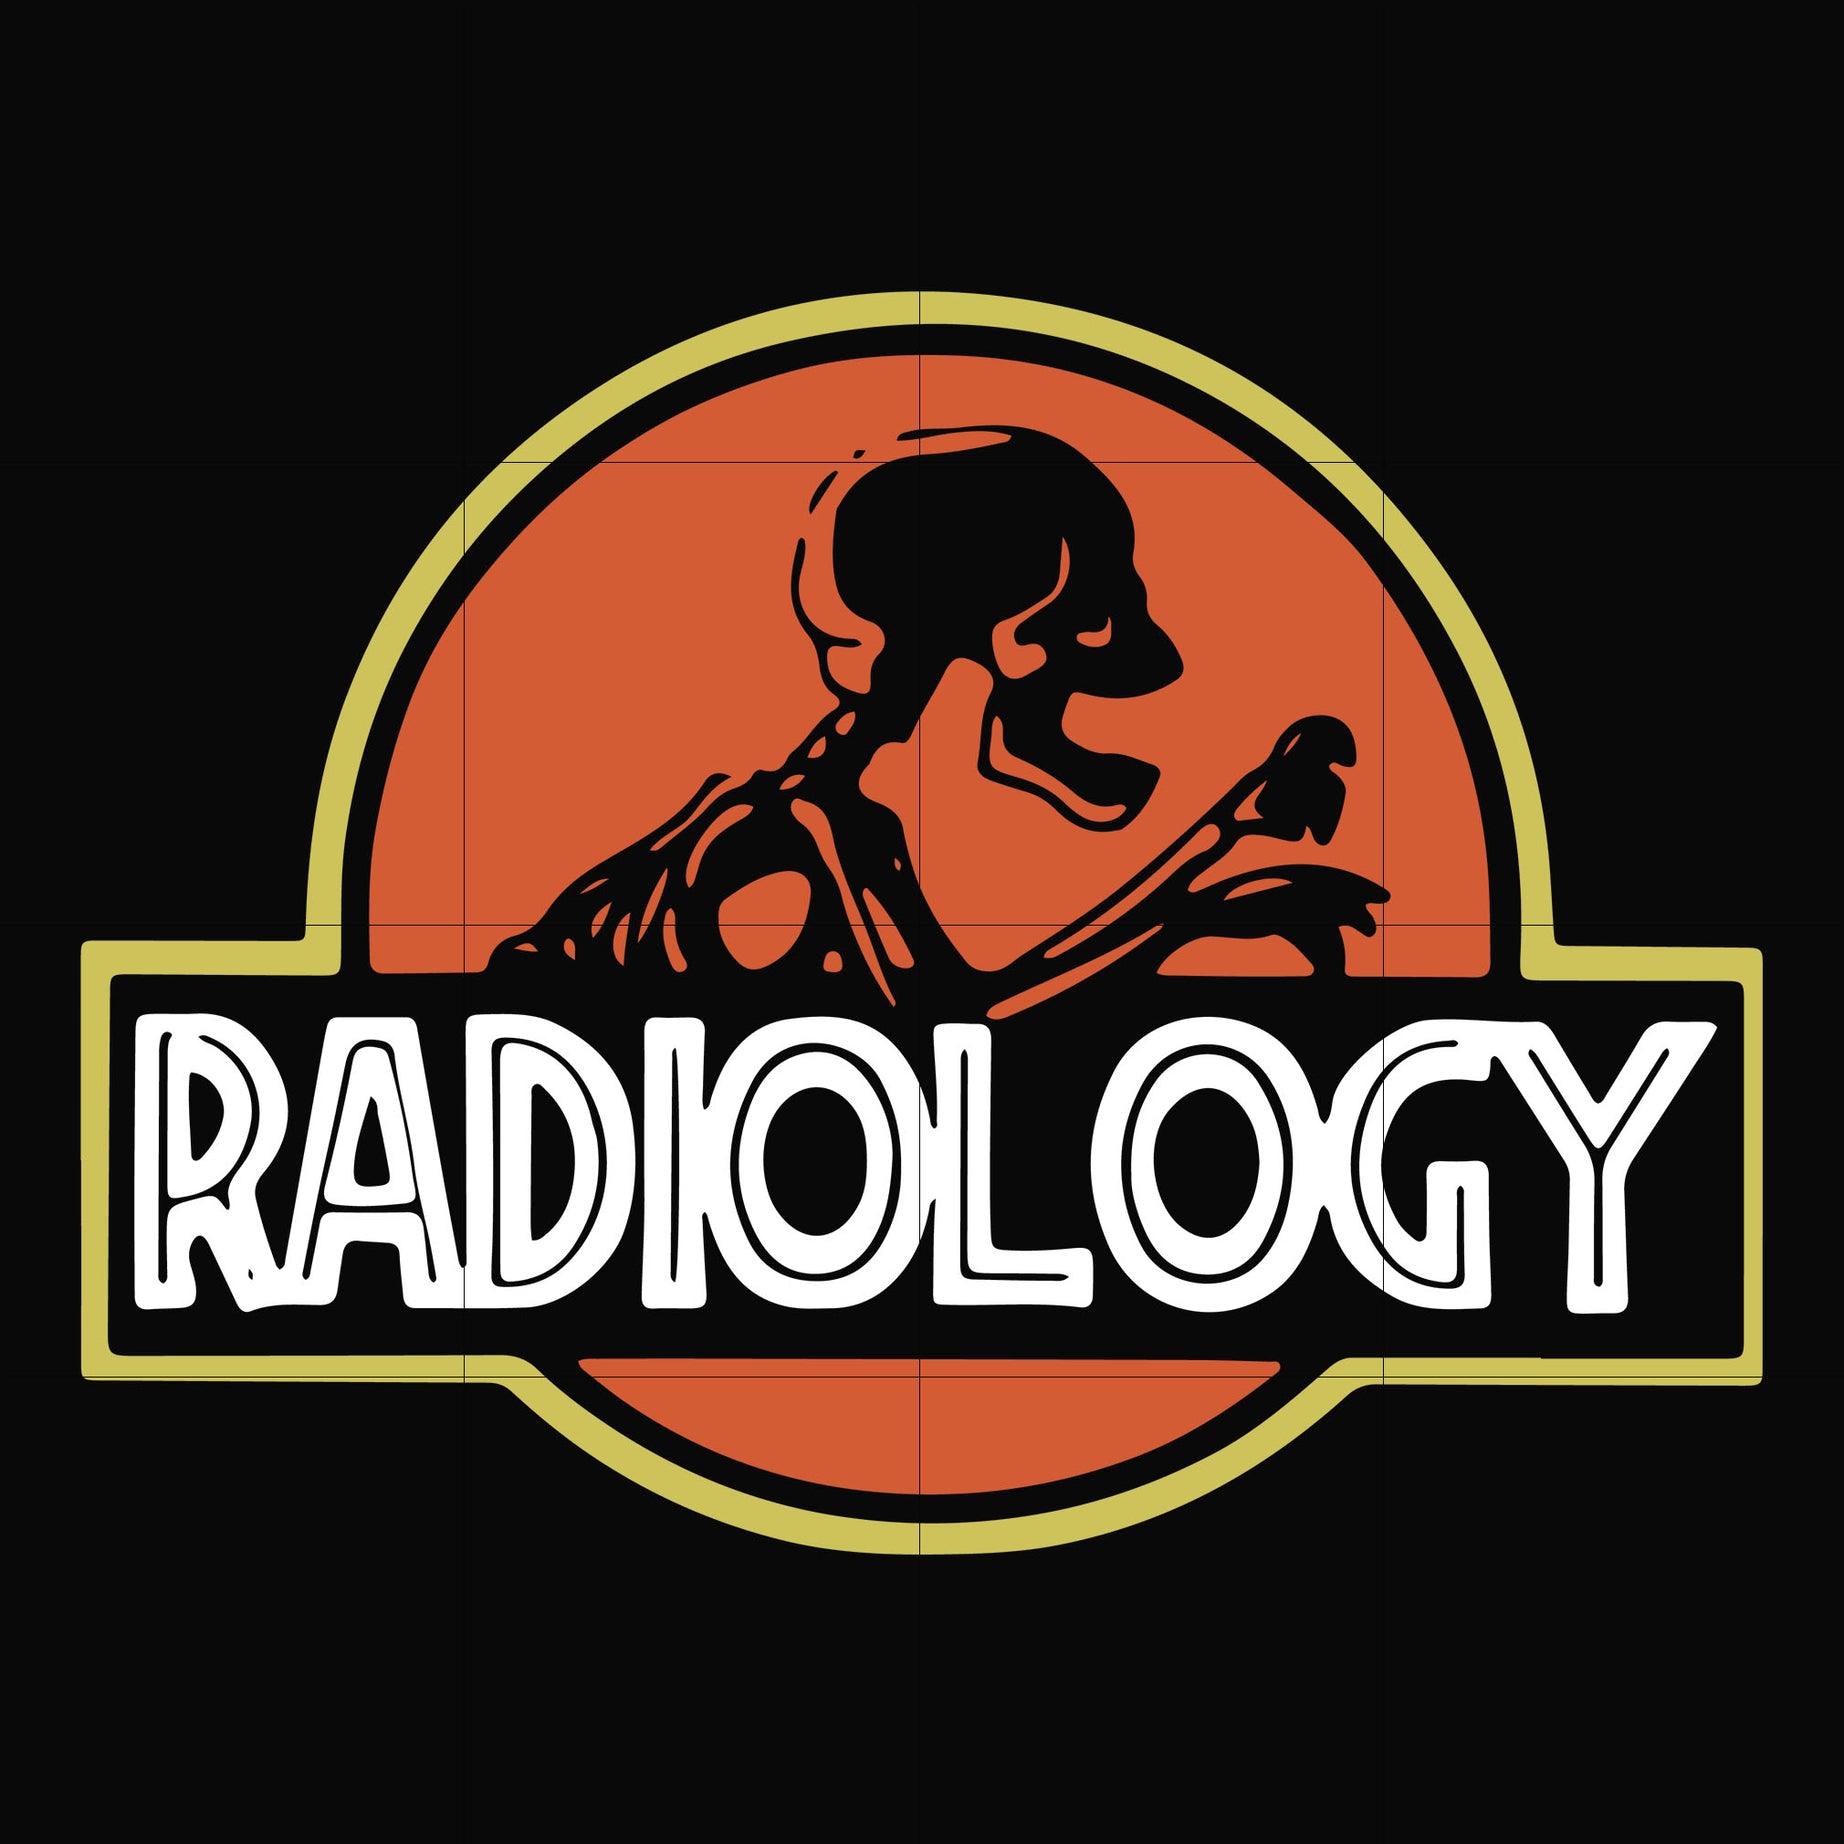 Radiology svg, png, dxf, eps digital file TD27072015